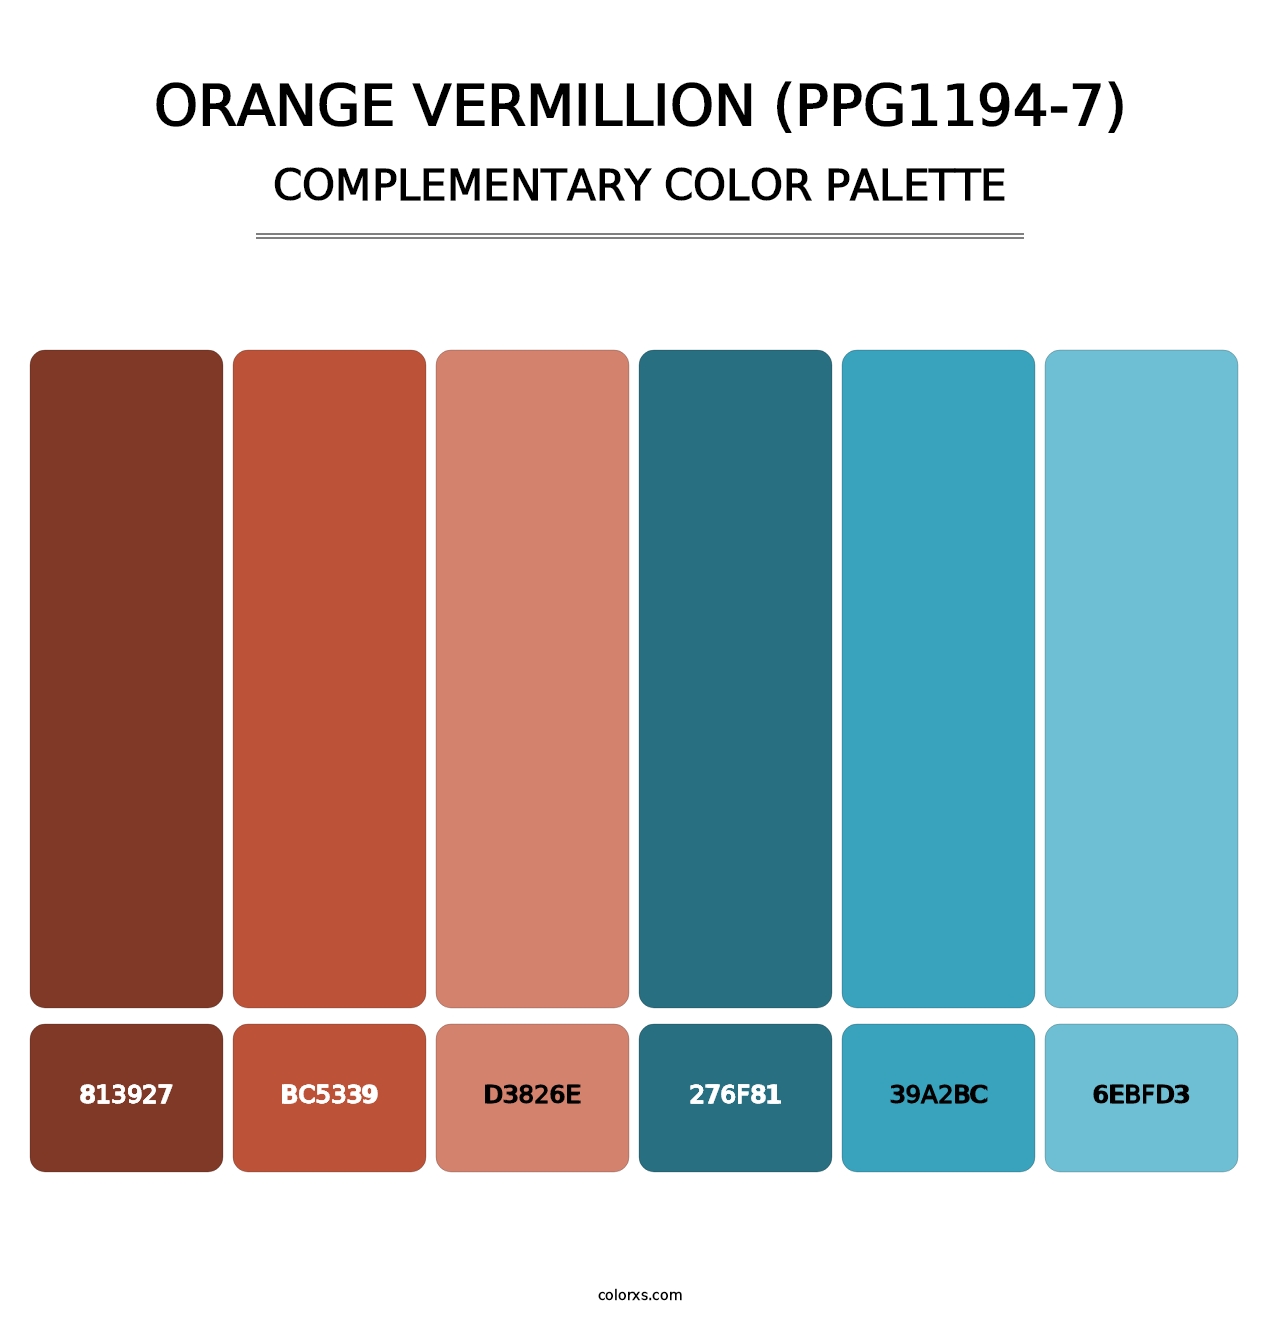 Orange Vermillion (PPG1194-7) - Complementary Color Palette